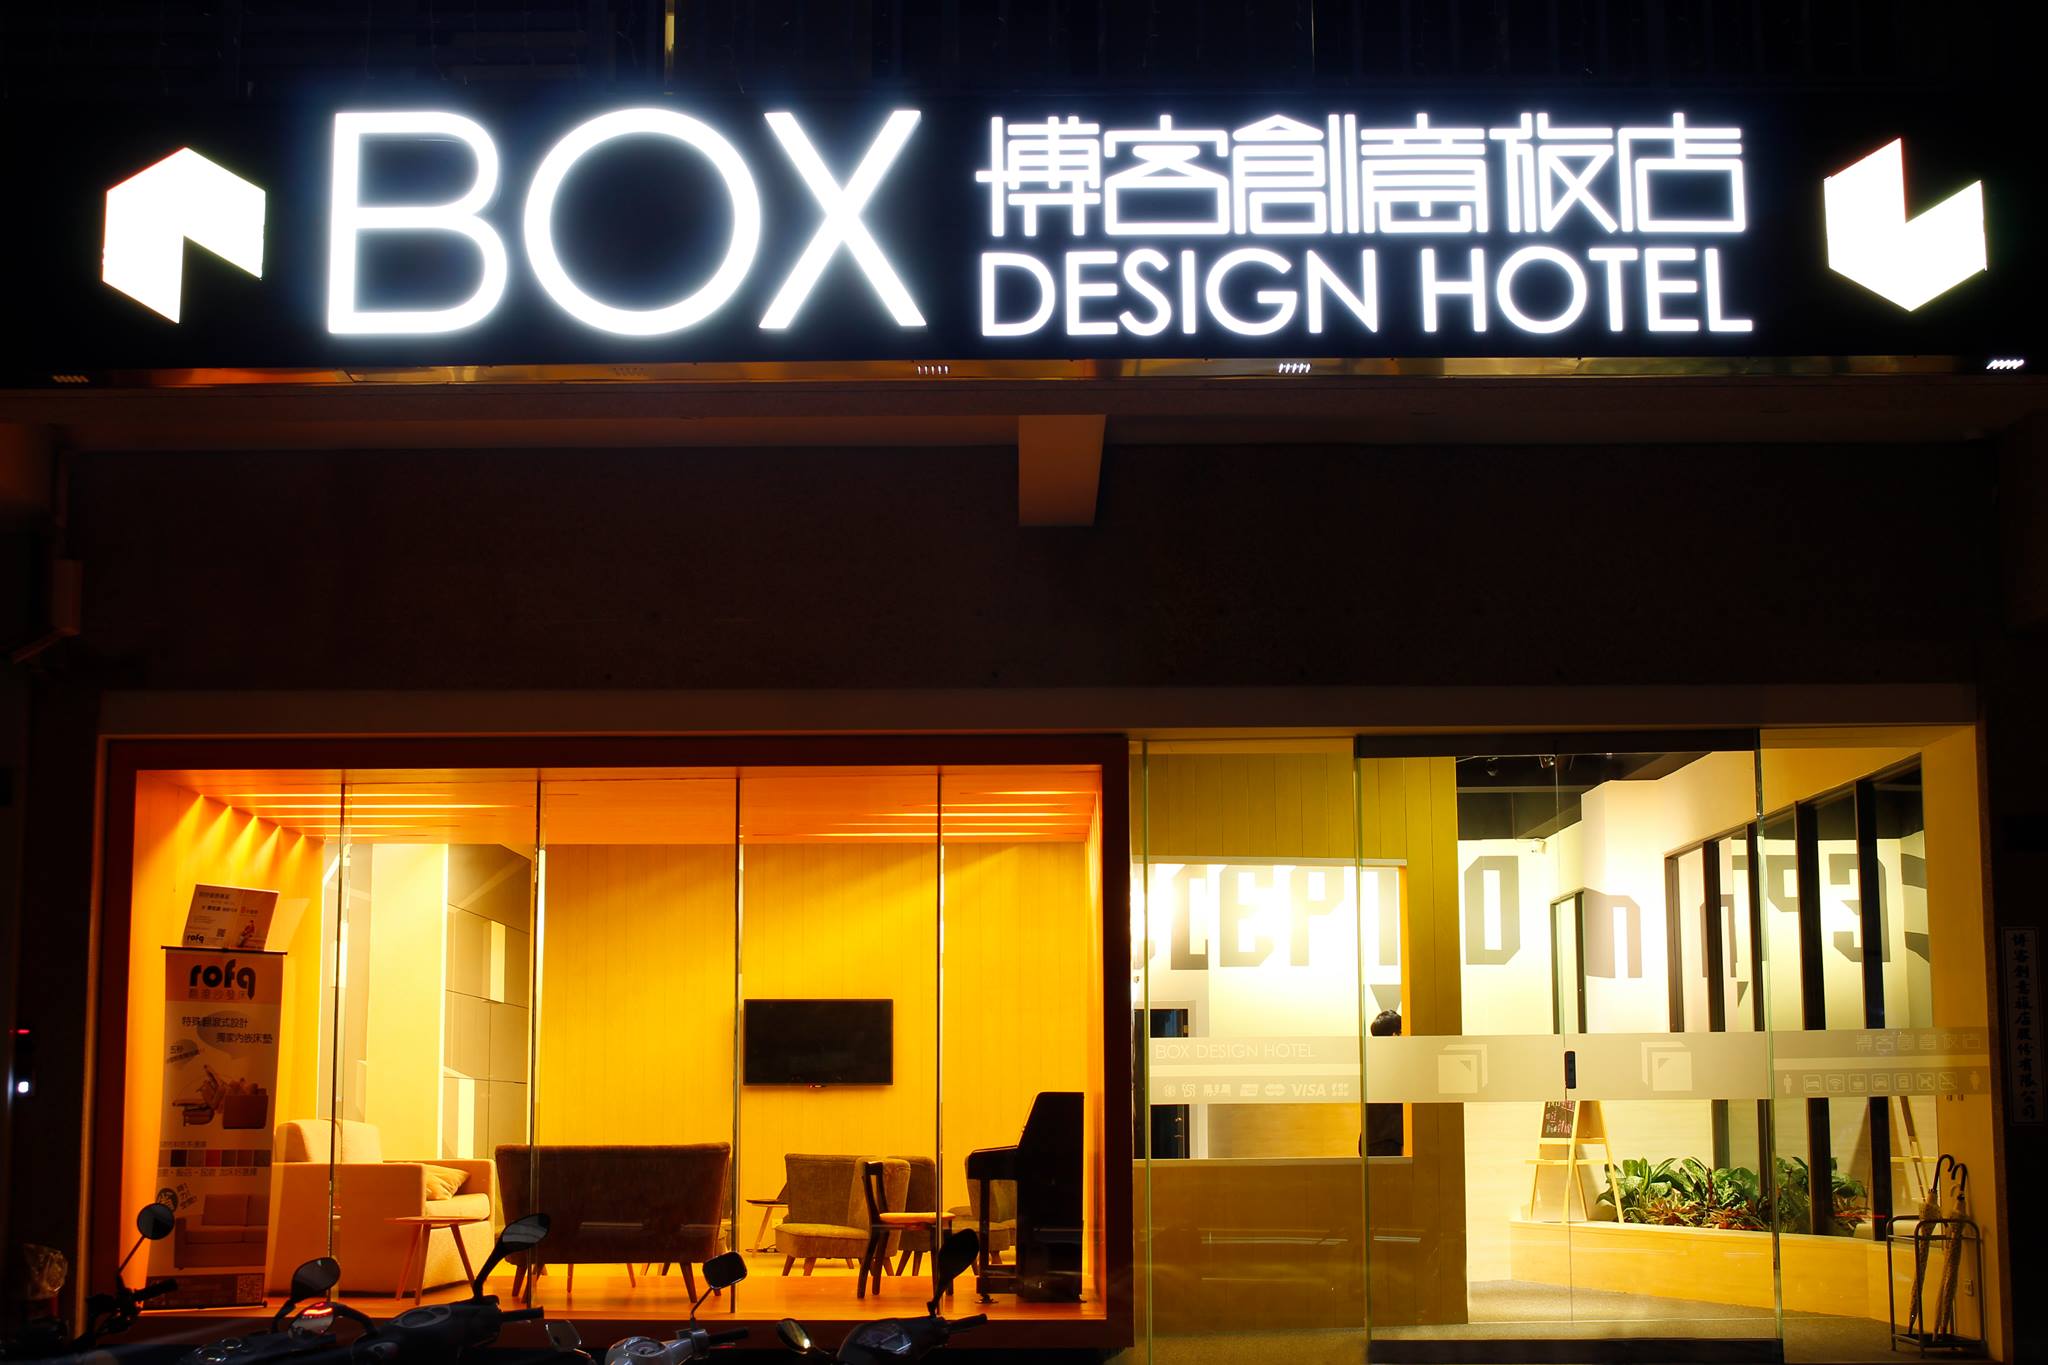 Box Design Hotel